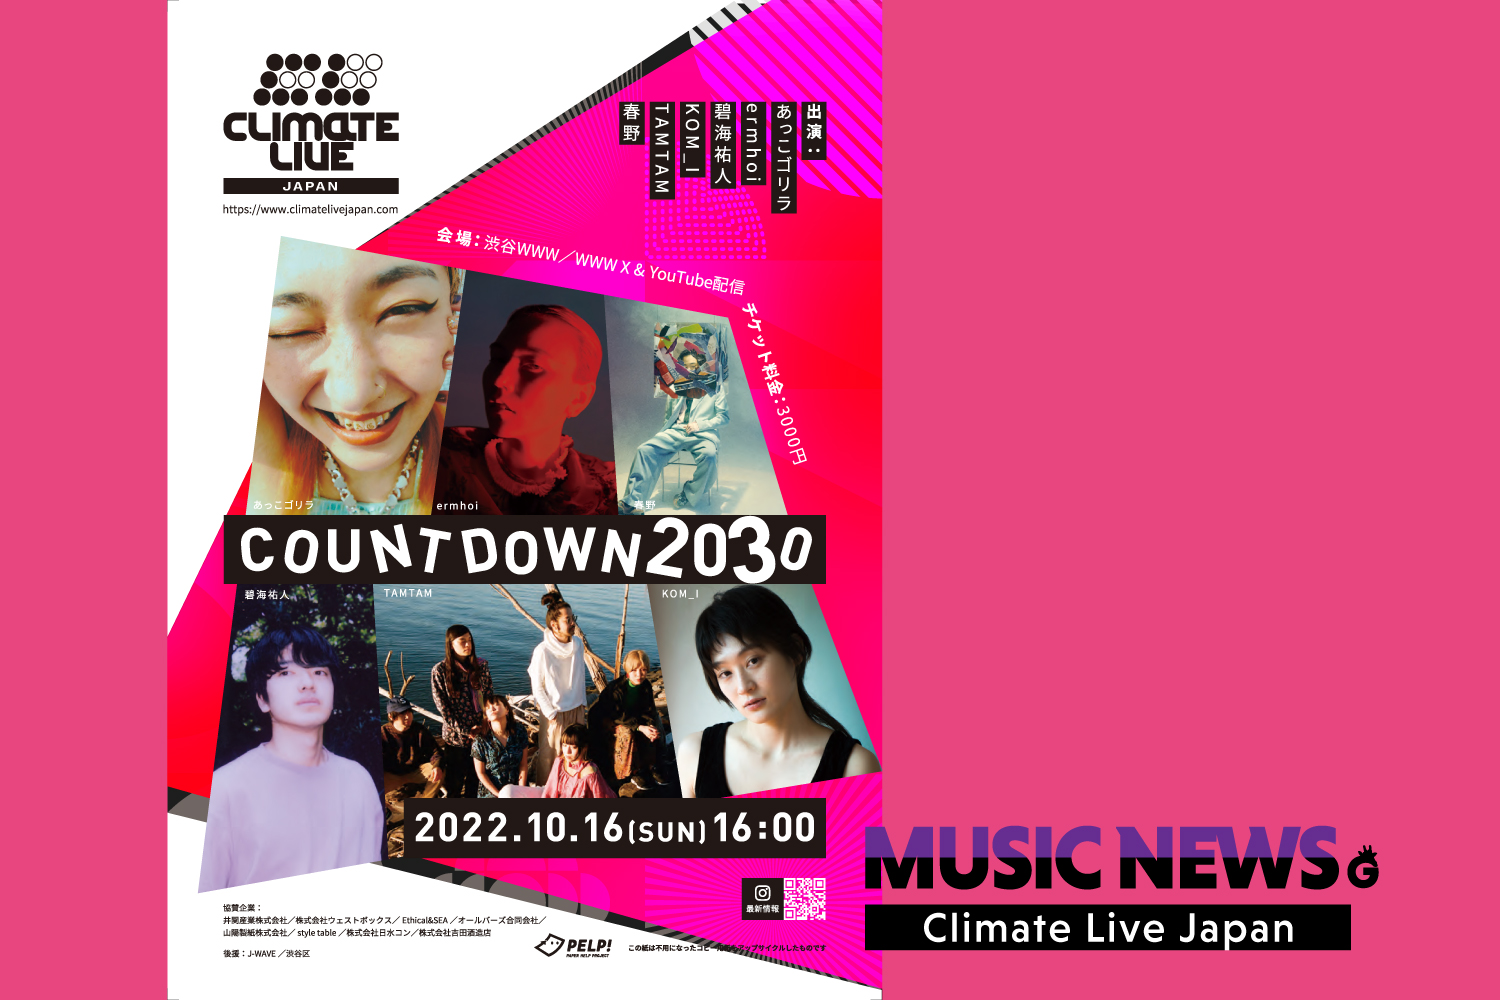 「『Climate Live Japan』いよいよ今月開催！ あっこゴリラ、ermhoi、KOM_Iら出演者と一緒に「気候危機」を考える音楽イベント」のアイキャッチ画像